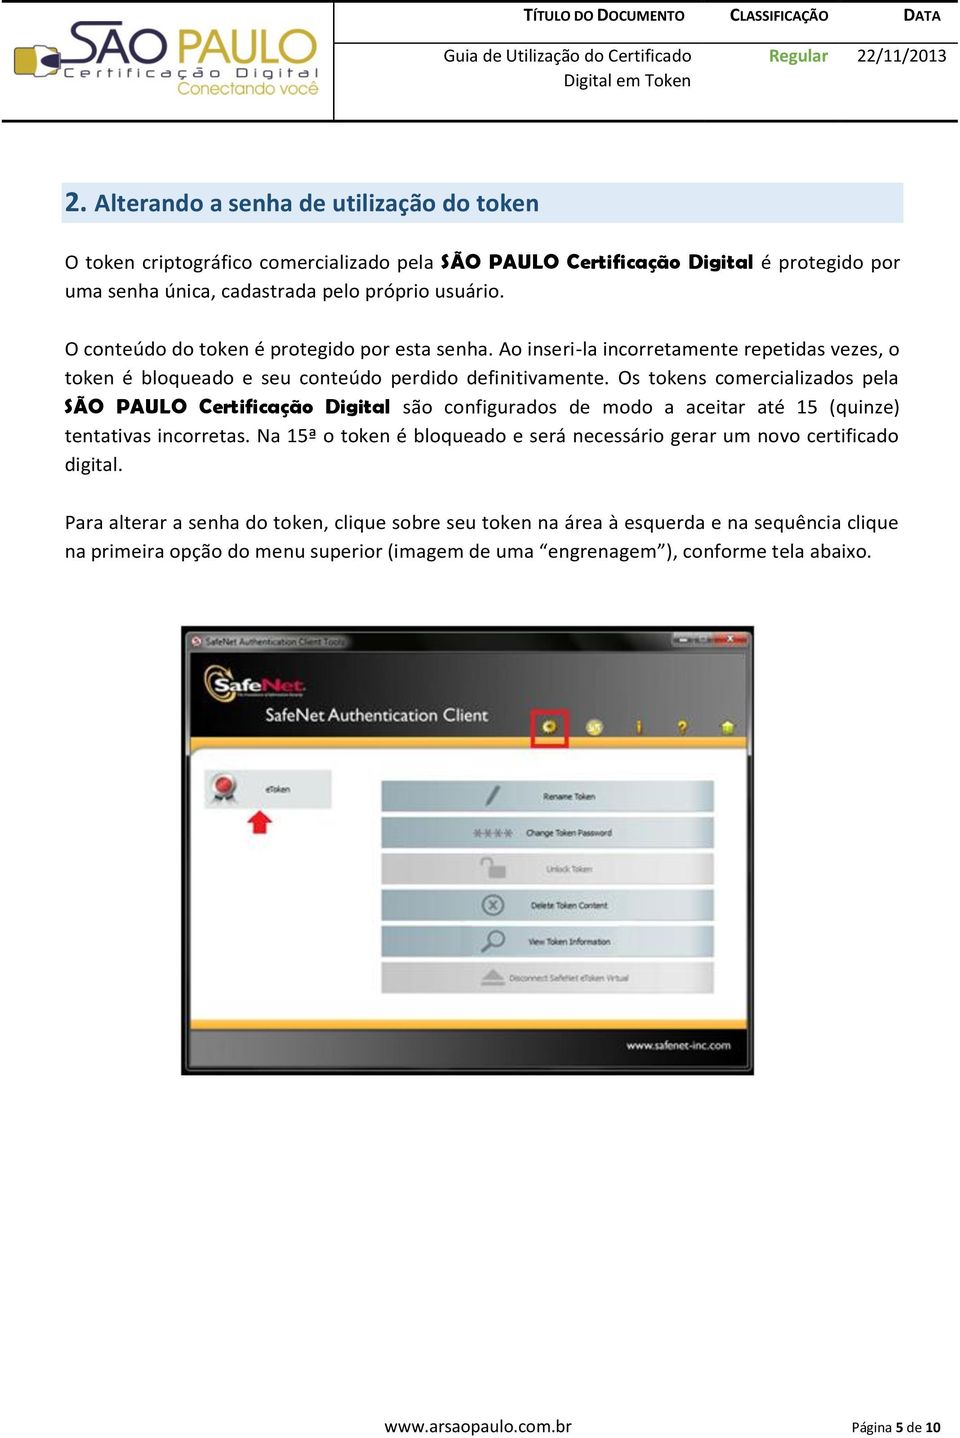 Os tokens comercializados pela SÃO PAULO Certificação Digital são configurados de modo a aceitar até 15 (quinze) tentativas incorretas.